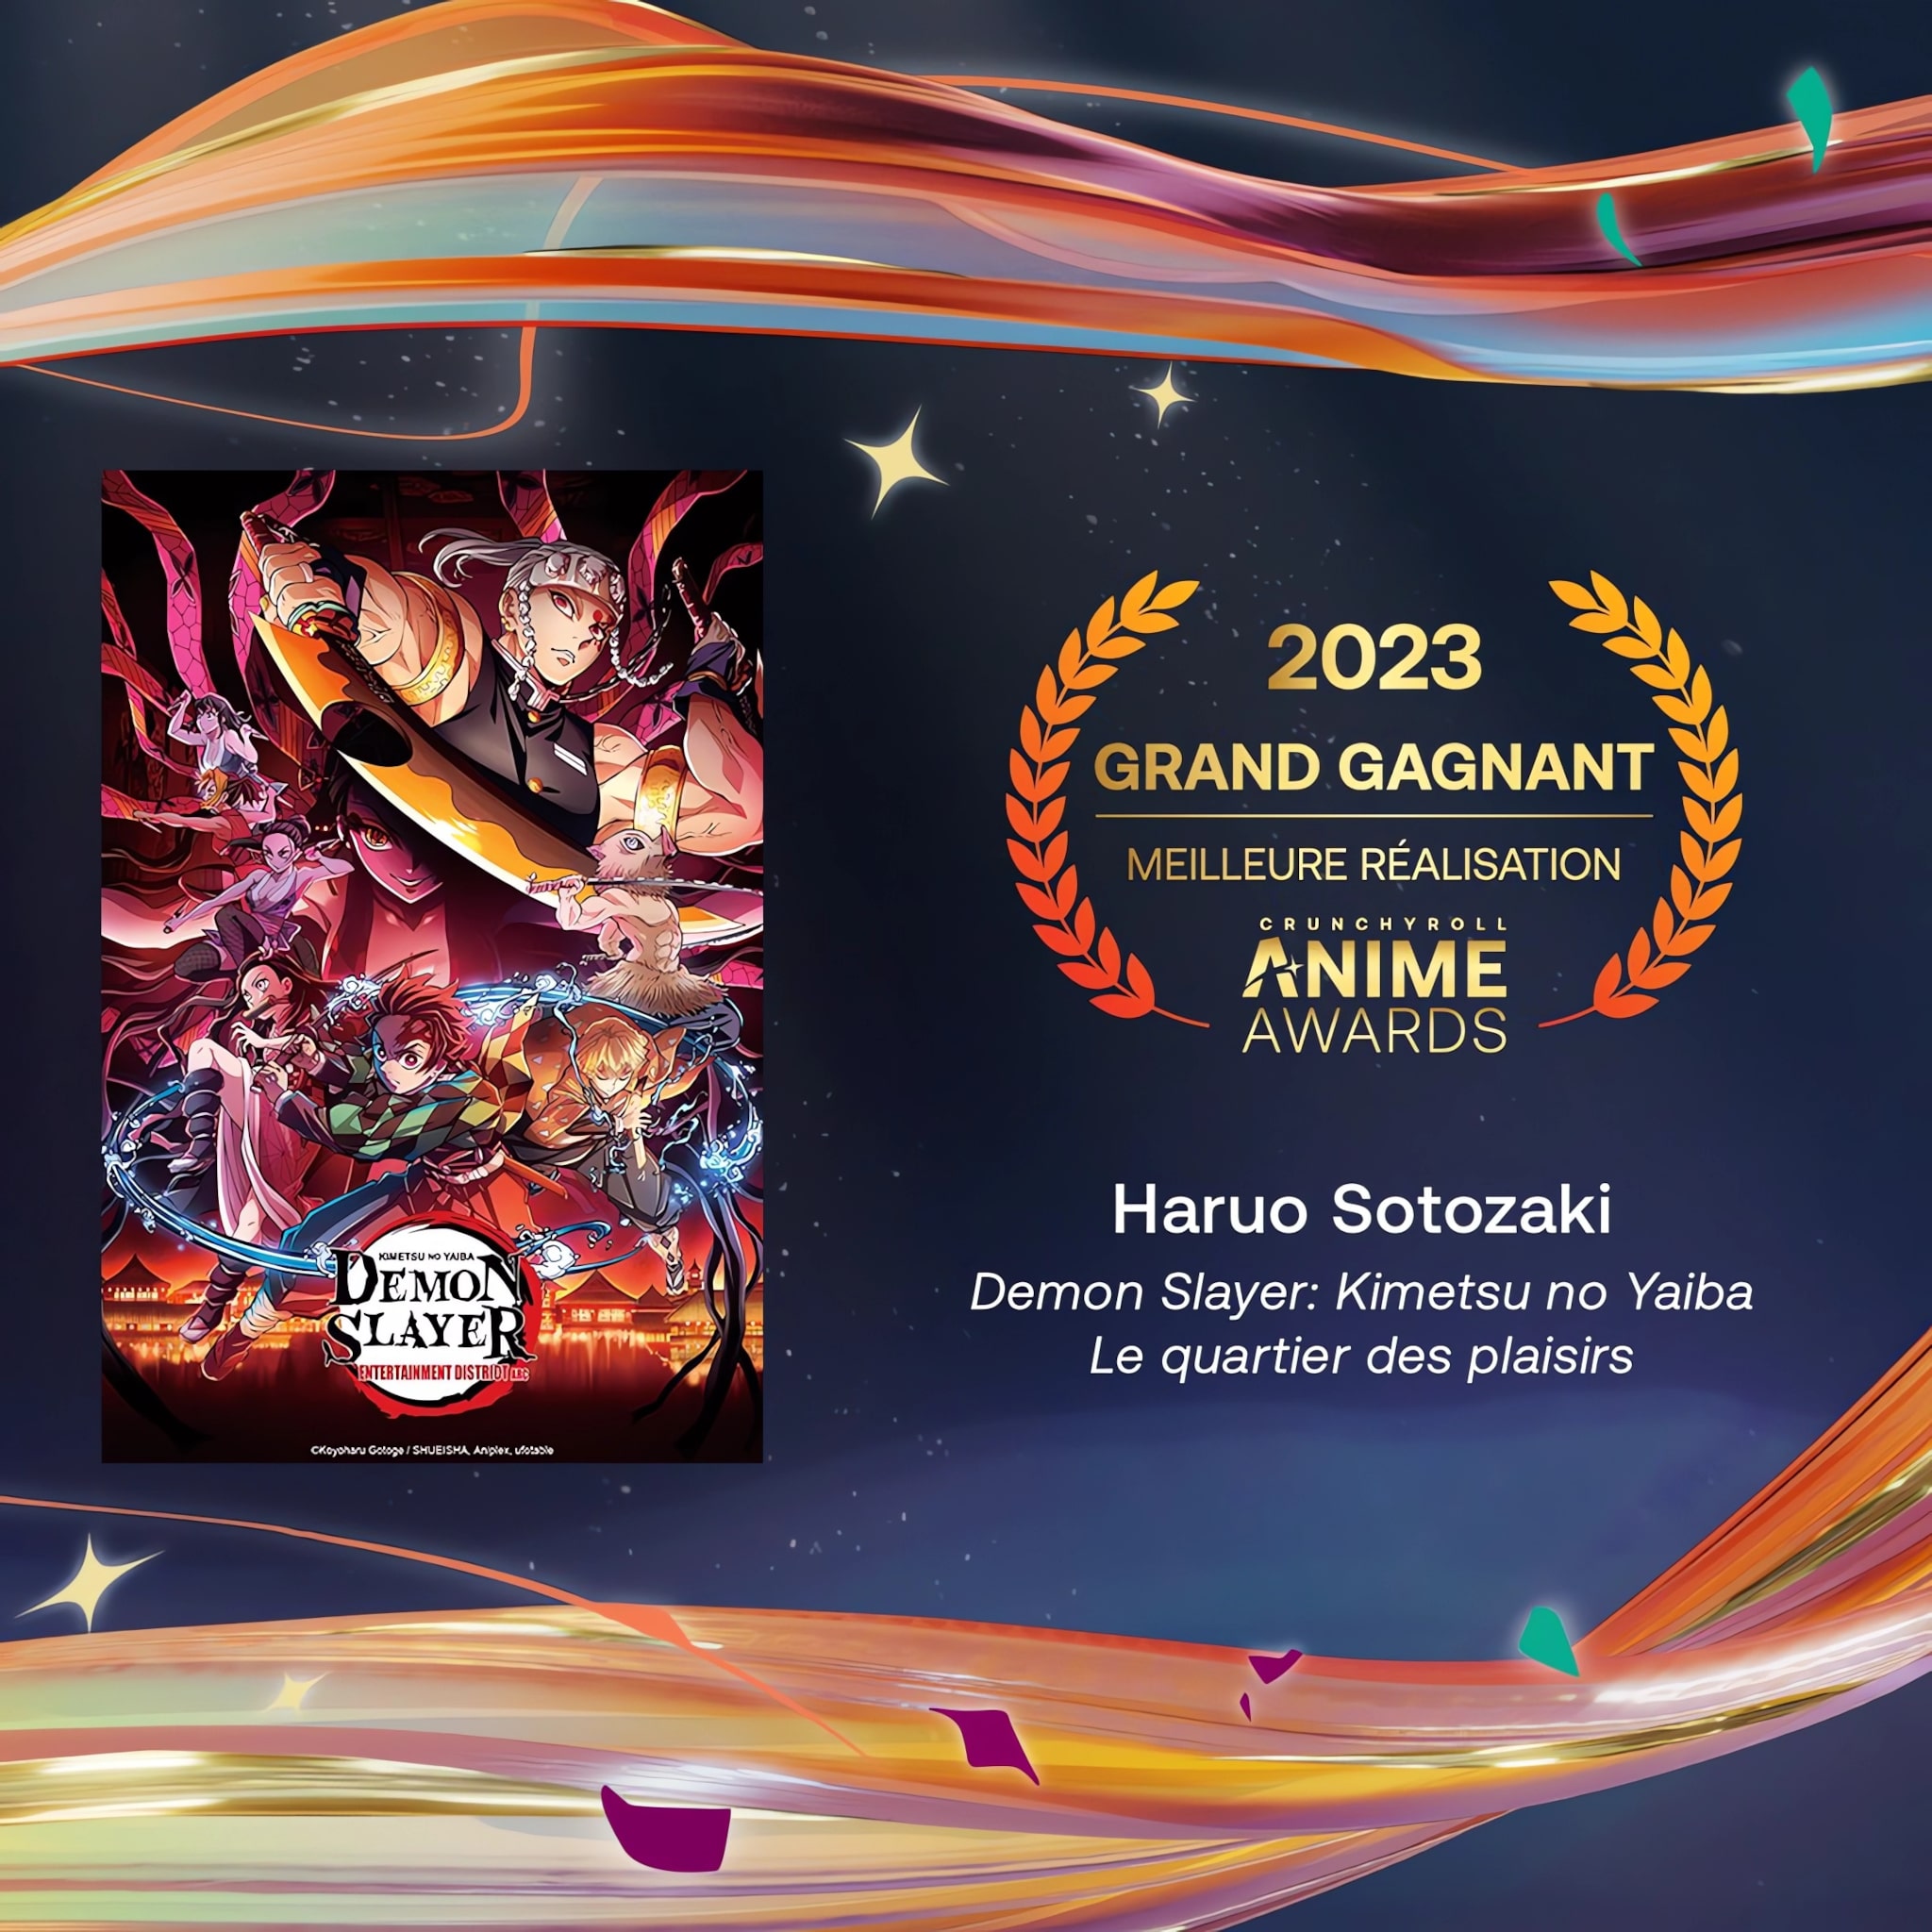 Prix de la meilleure réalisation pour les Crunchyroll Anime Awards 2023